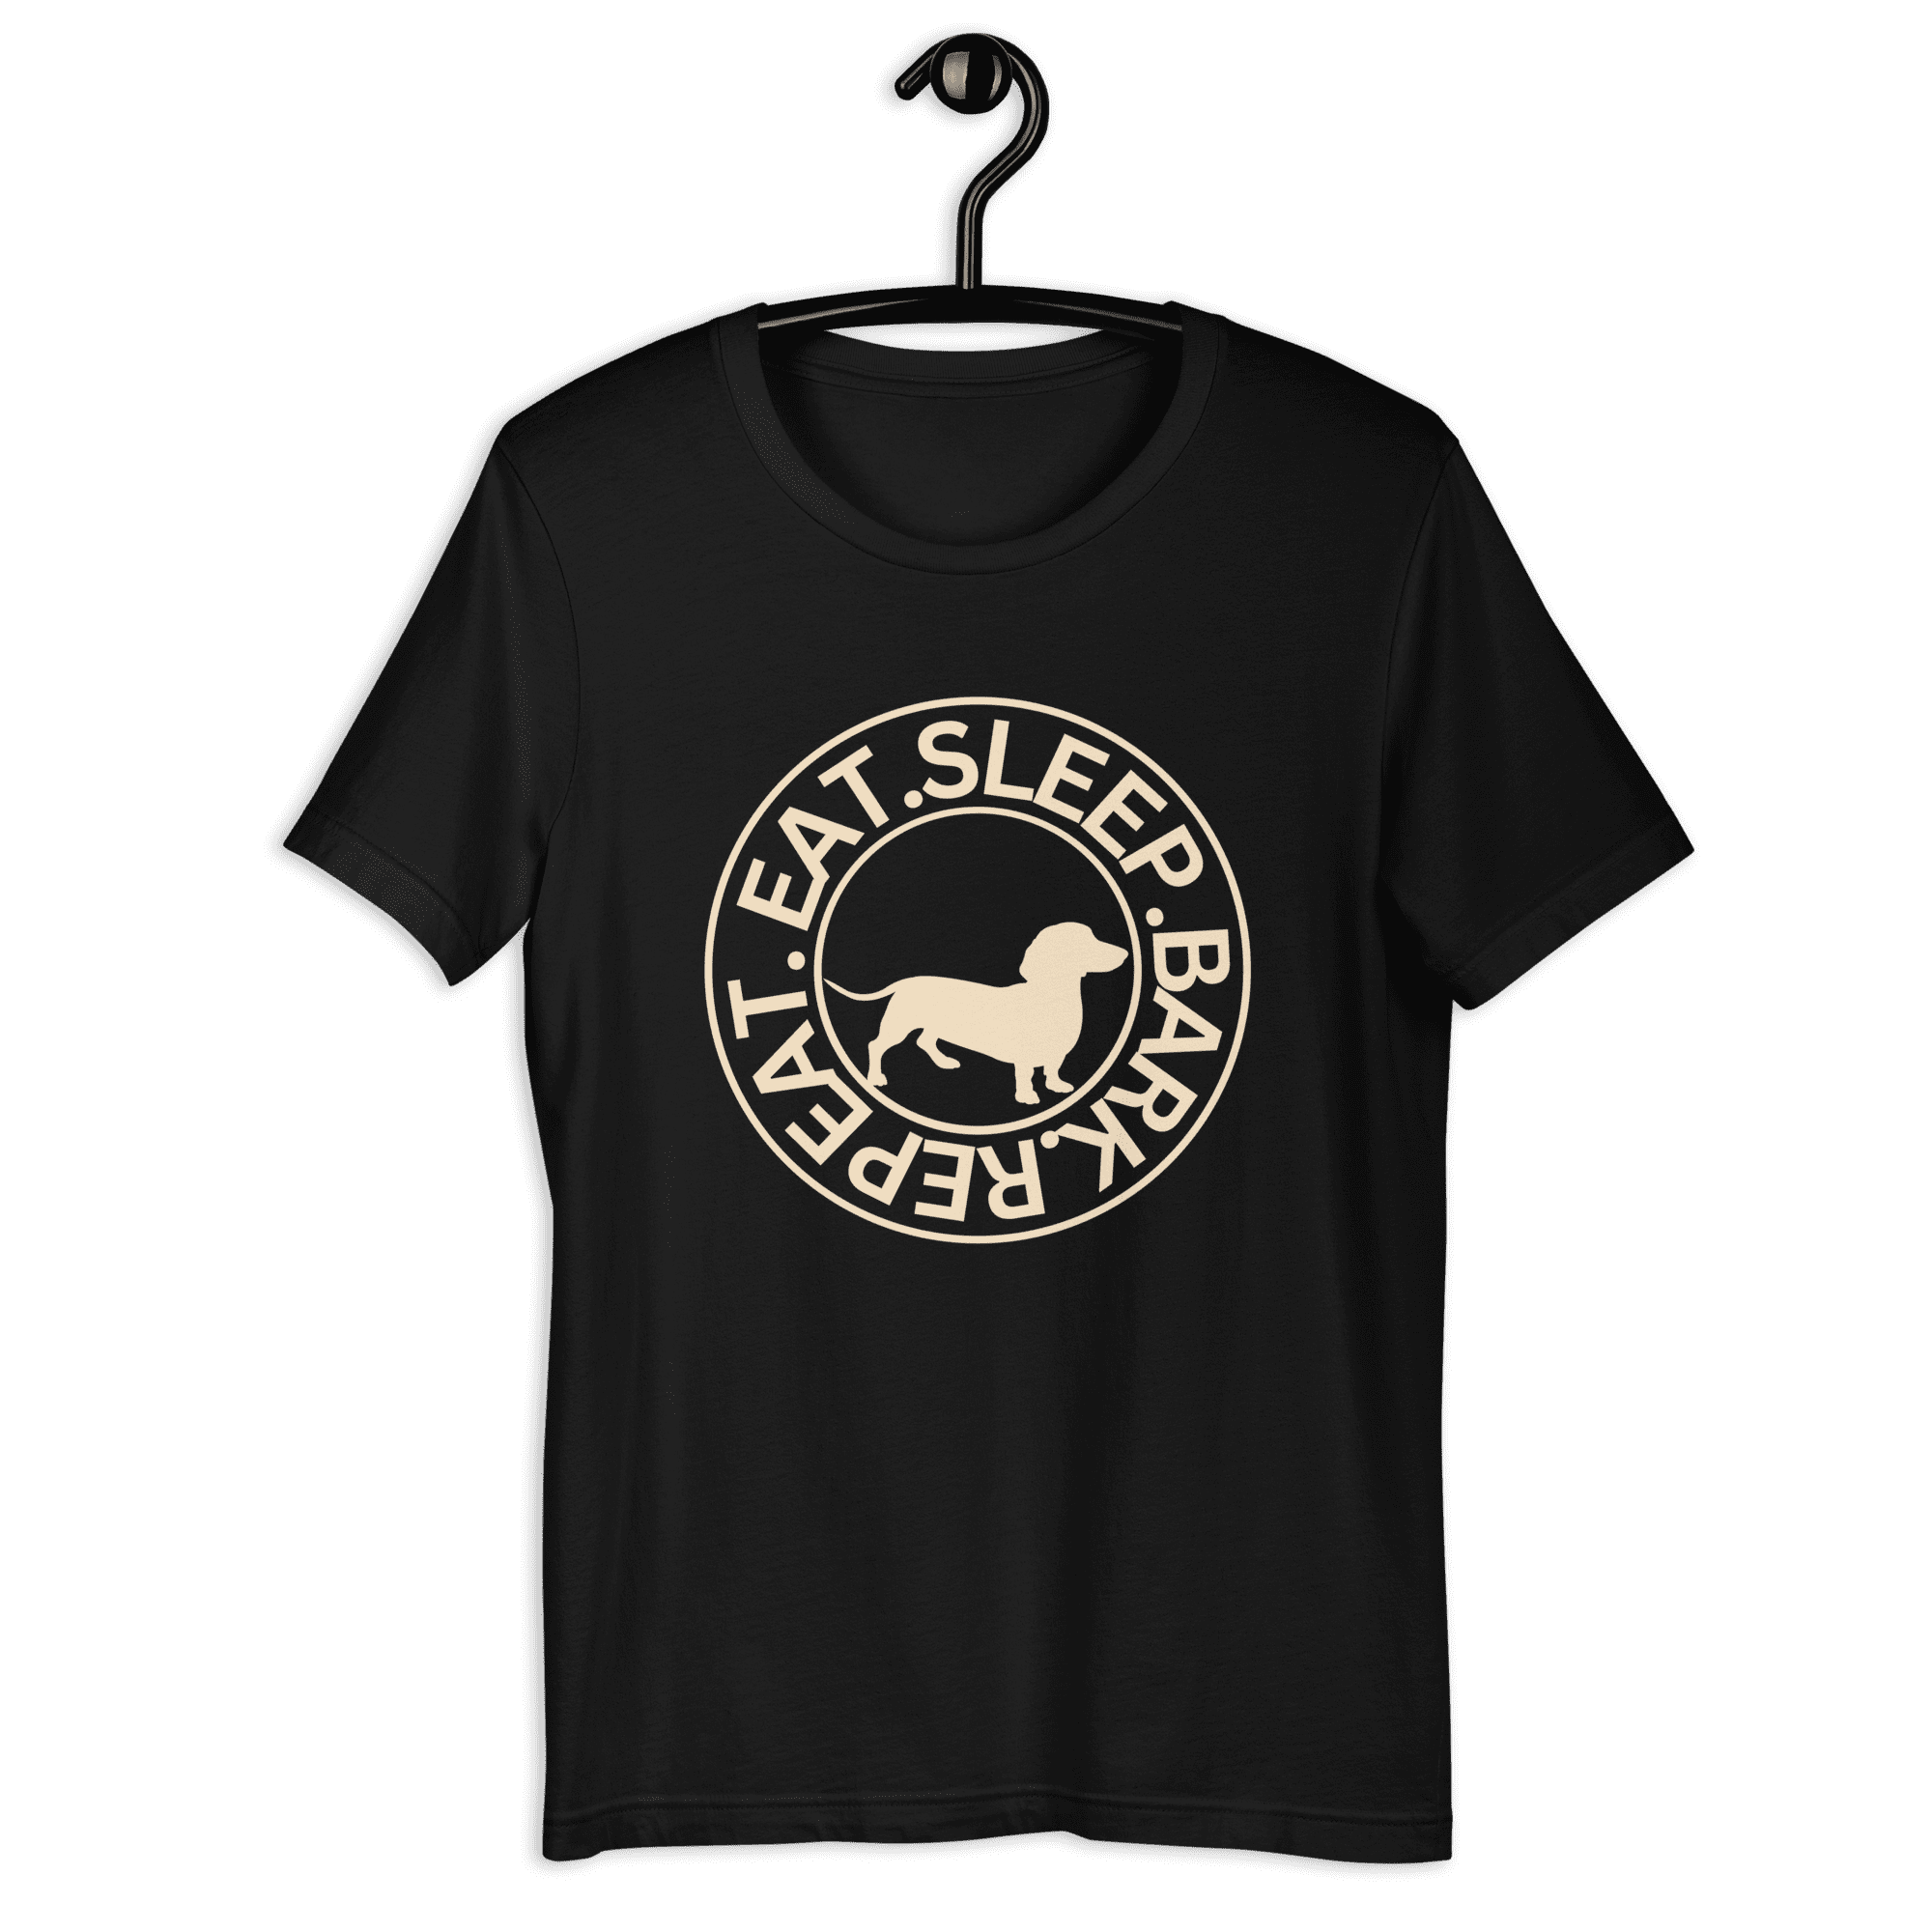 Eat Sleep Bark Repeat Transylvanian Hound (Erdélyi Kopó) Unisex T-Shirt. Black